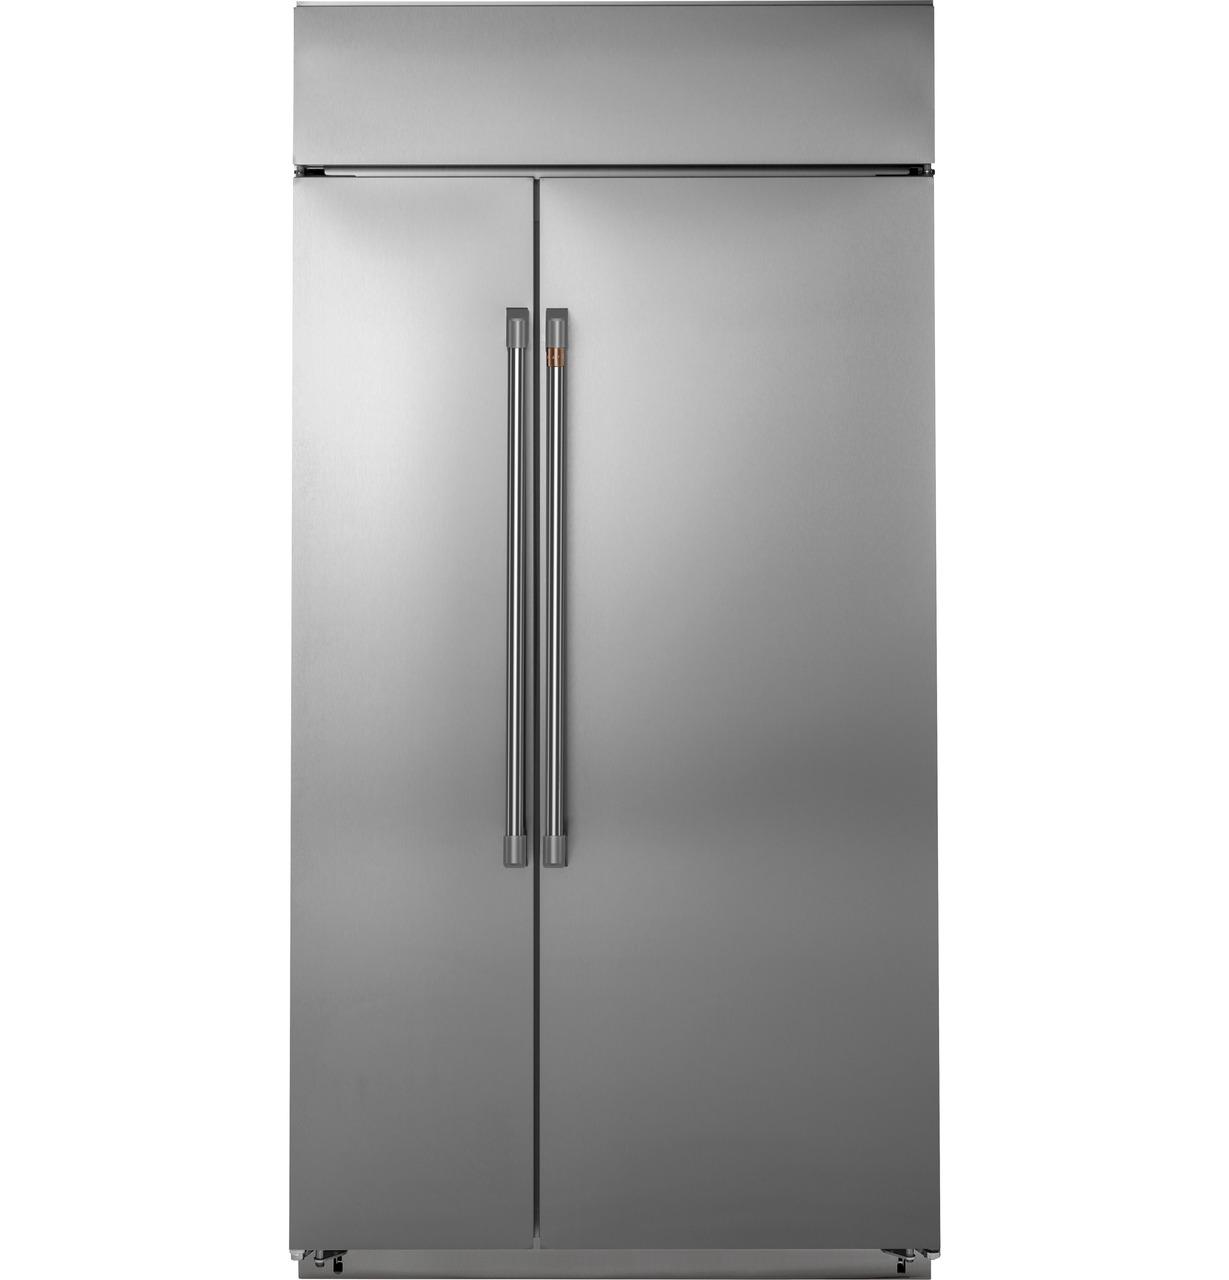 Caf(eback)™ 48" Smart Built-In Side-by-Side Refrigerator